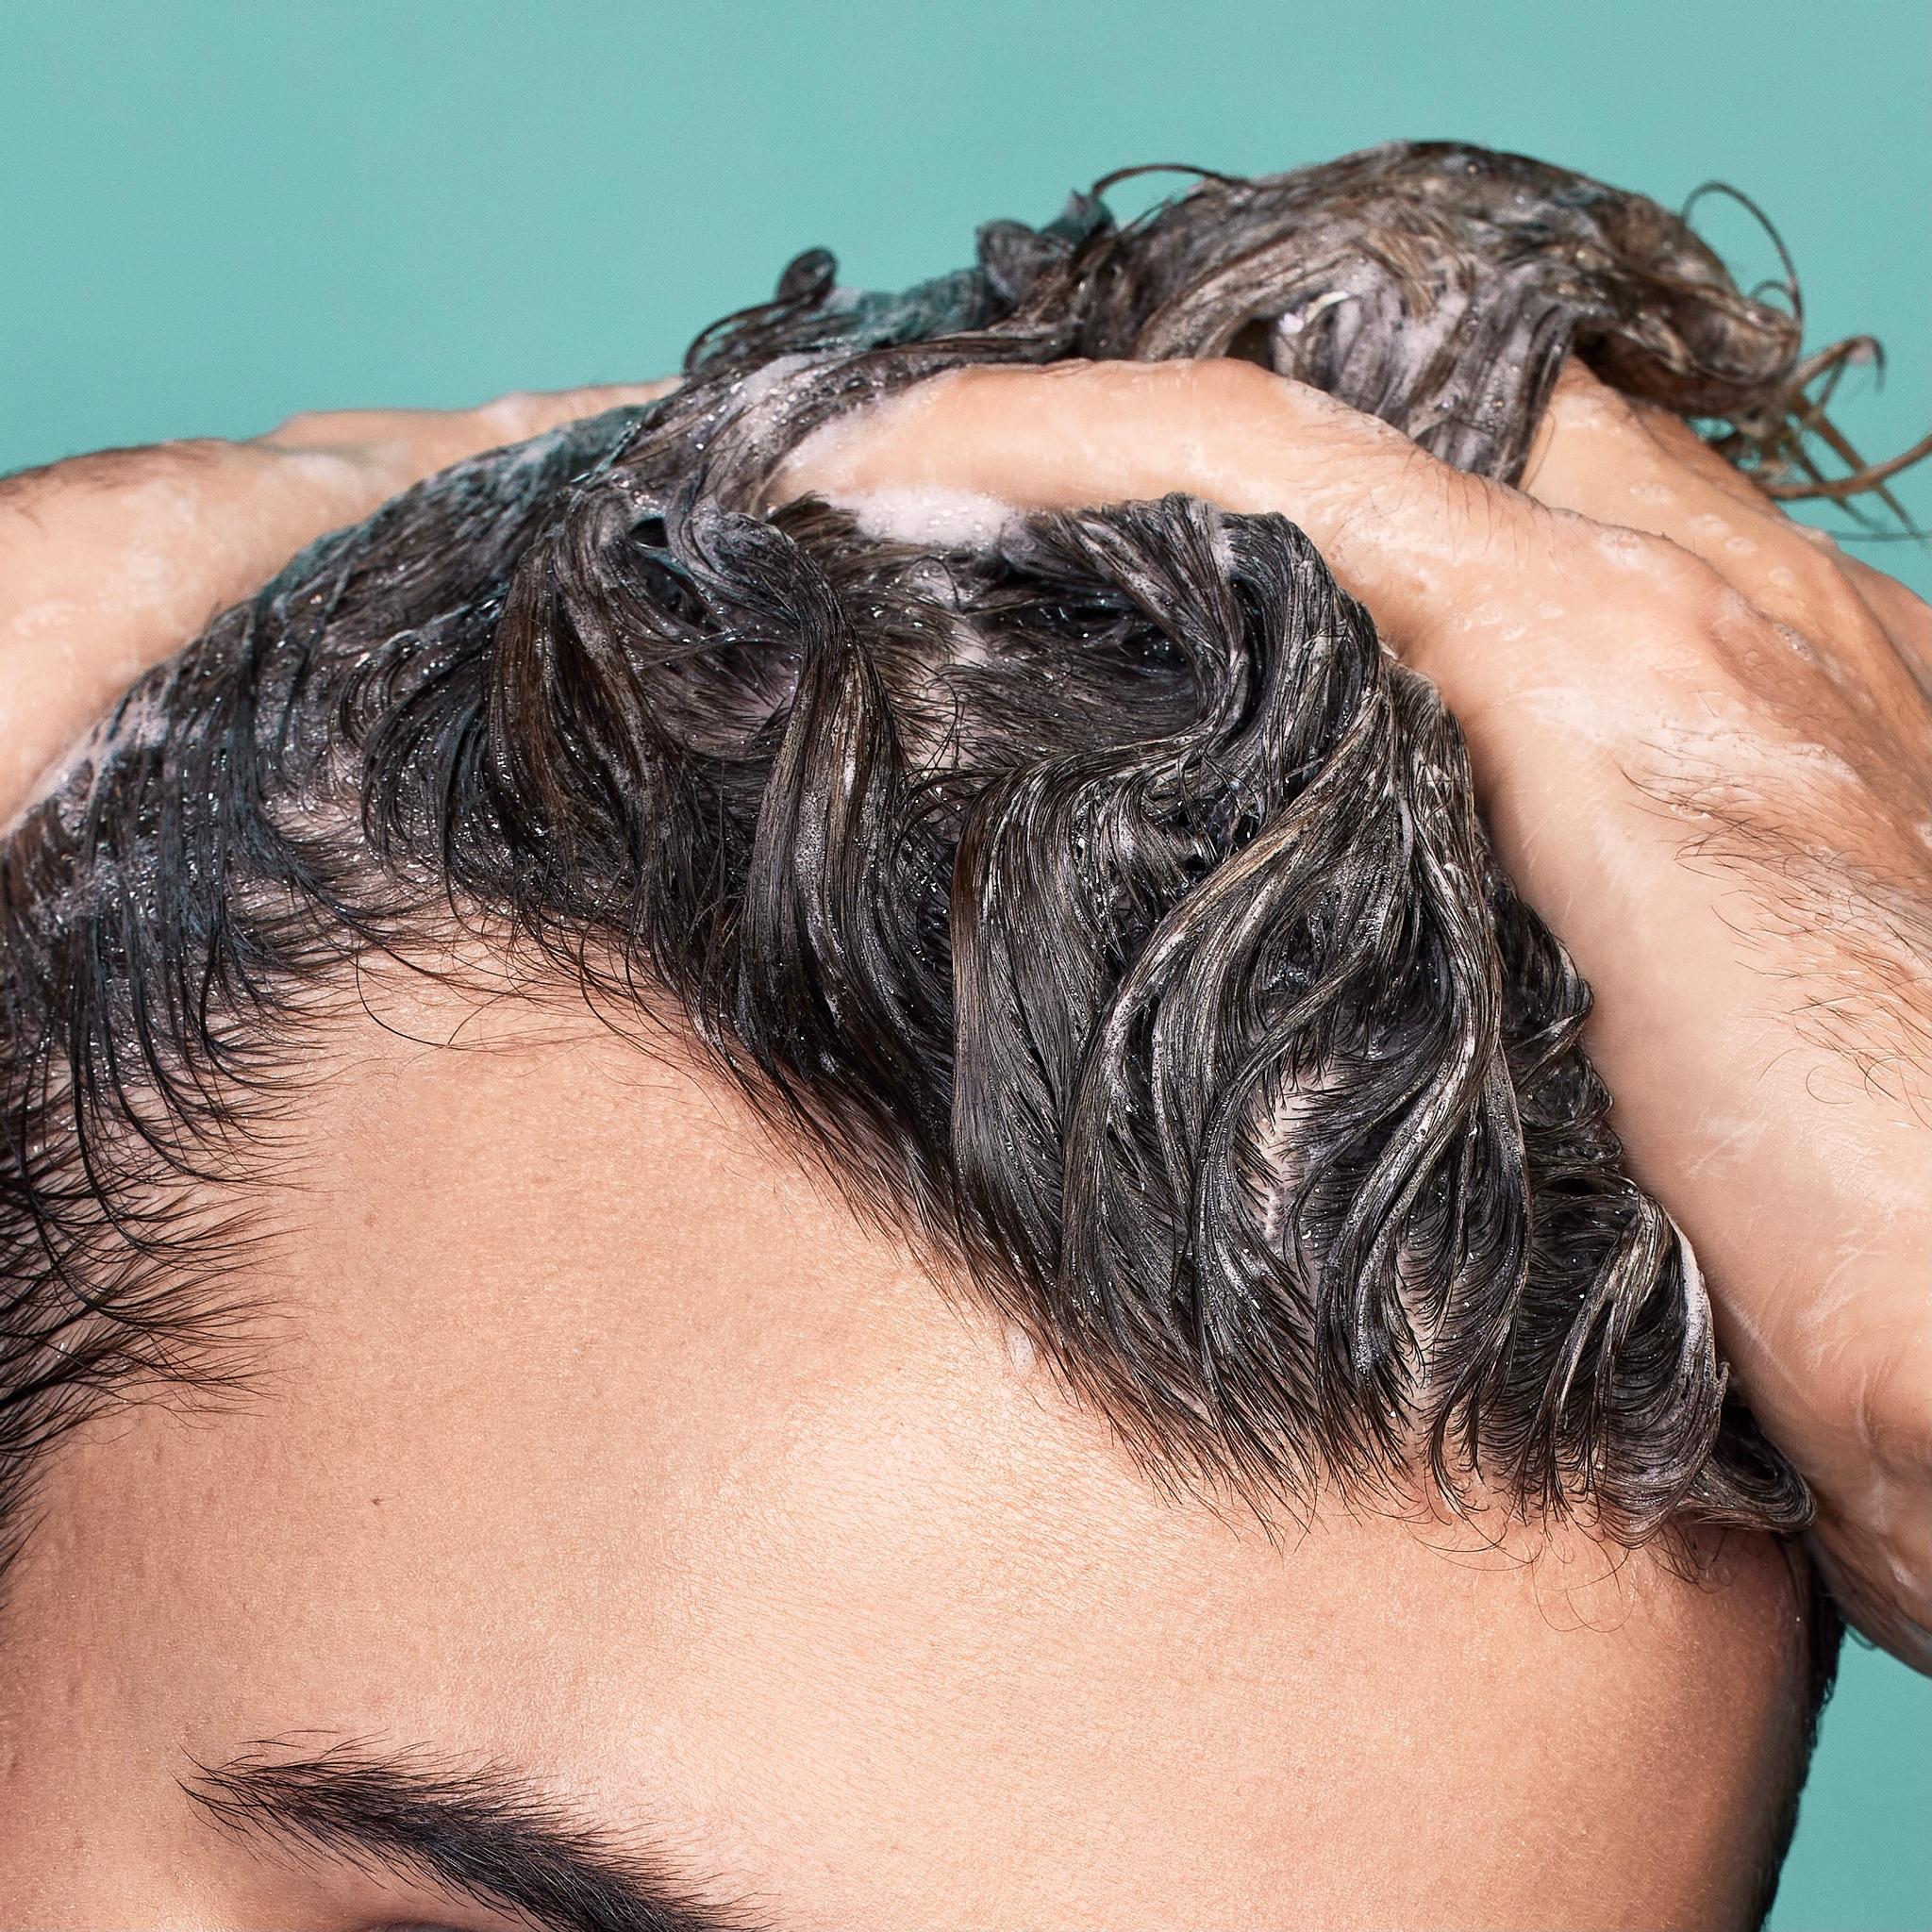 Ăn gì mọc tóc nhanh ở nam giới hiệu quả? - Classic.vn